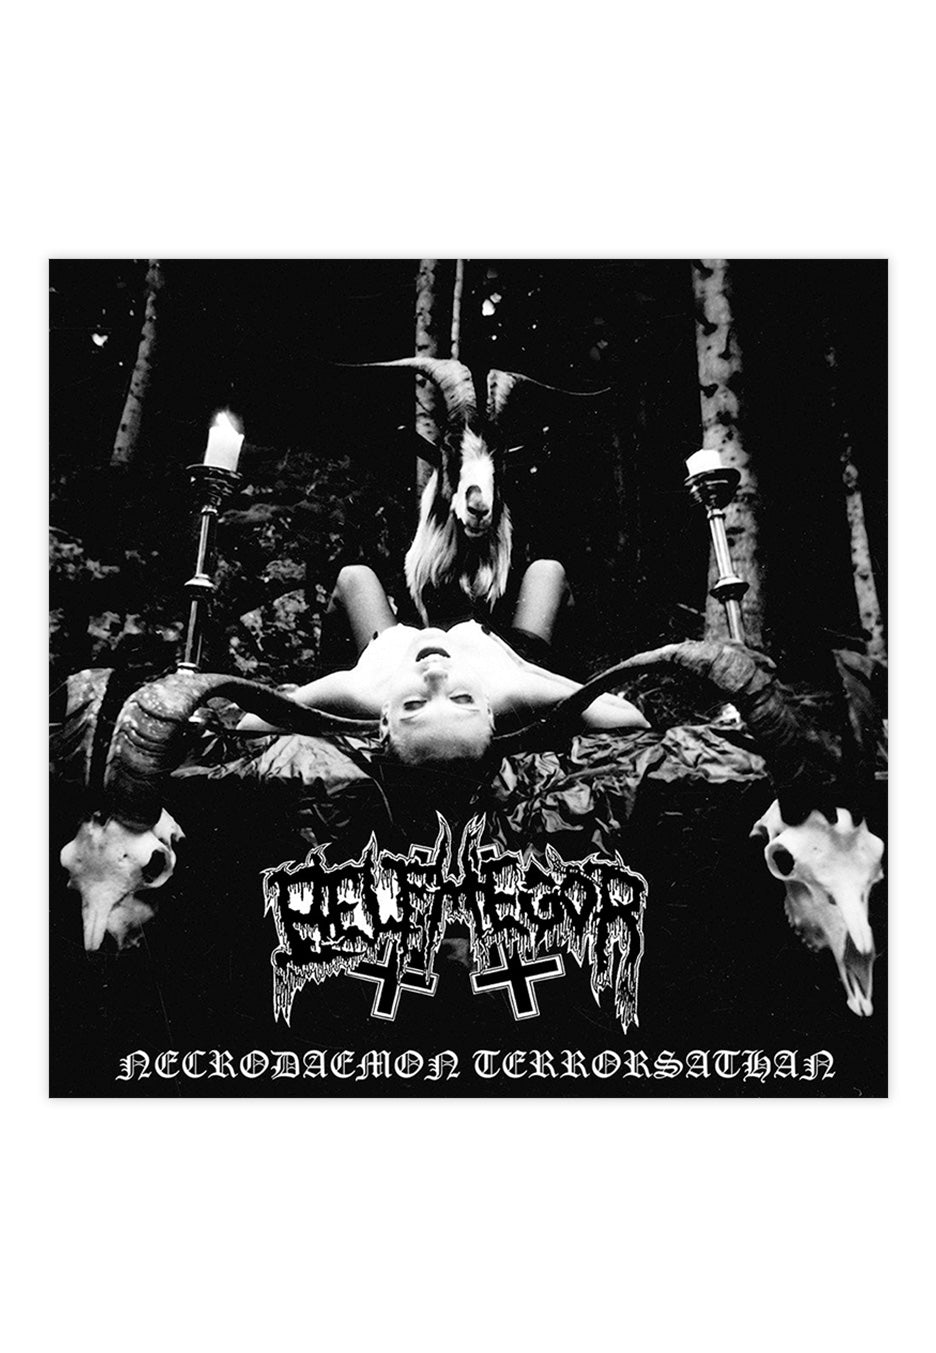 Belphegor - Necrodaemon Terrorsathan - CD